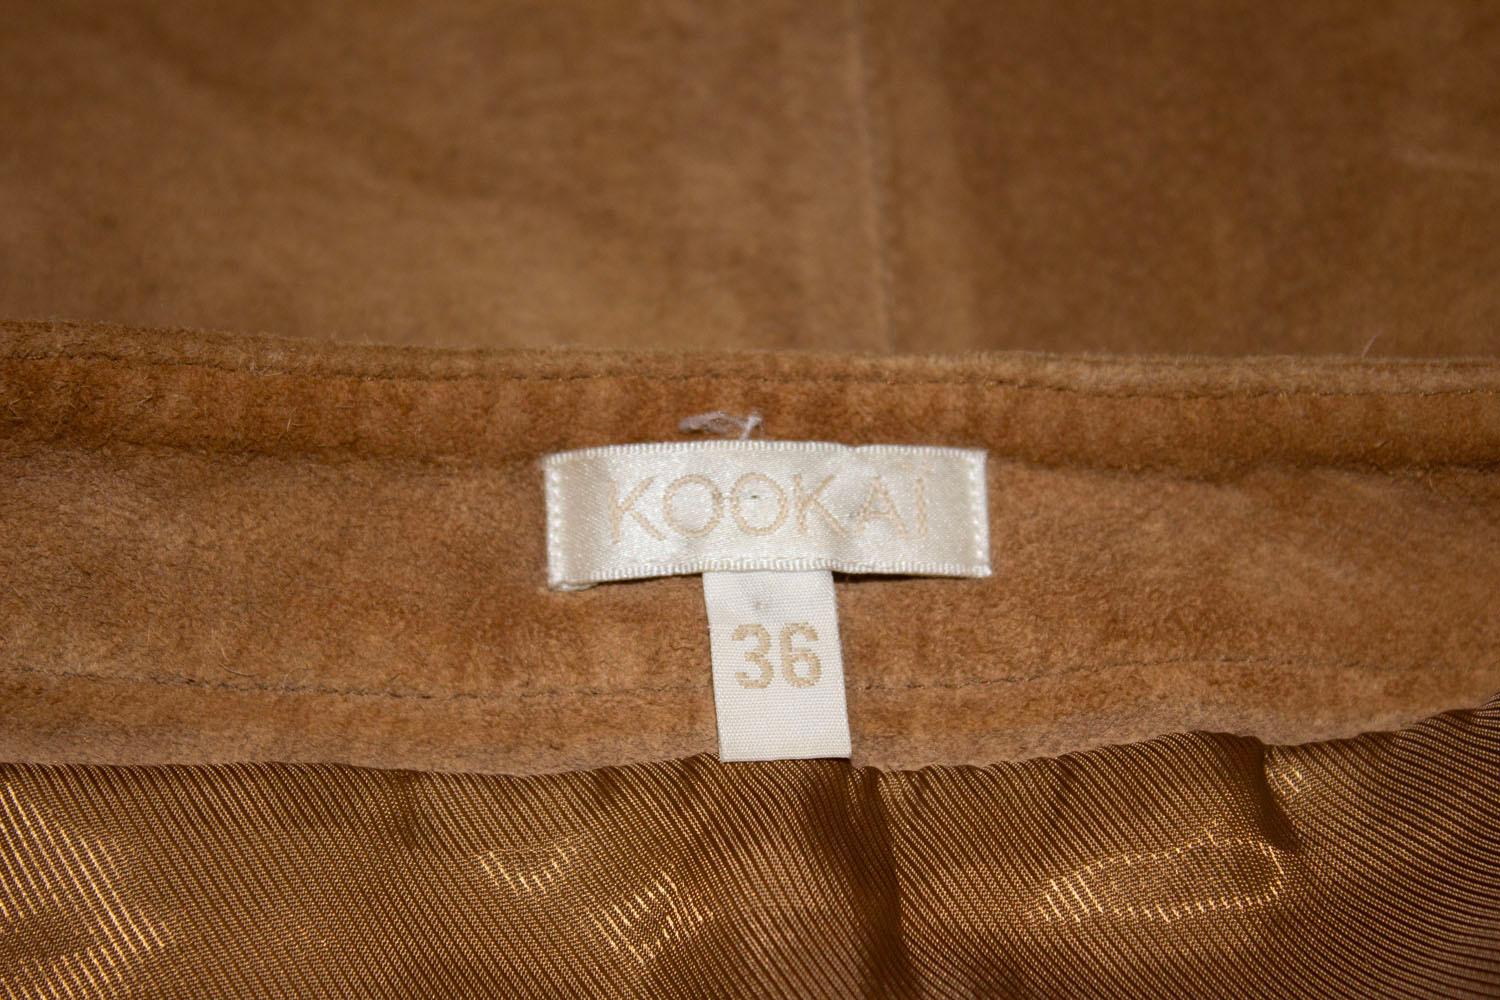 Une superbe jupe vintage en daim de la maison française Kookai. De couleur beige clair, la jupe est dotée d'un lien sur le devant, de deux poches, d'une ouverture zippée sur le côté et est entièrement doublée. 
Taille 36, tour de taille 28'',